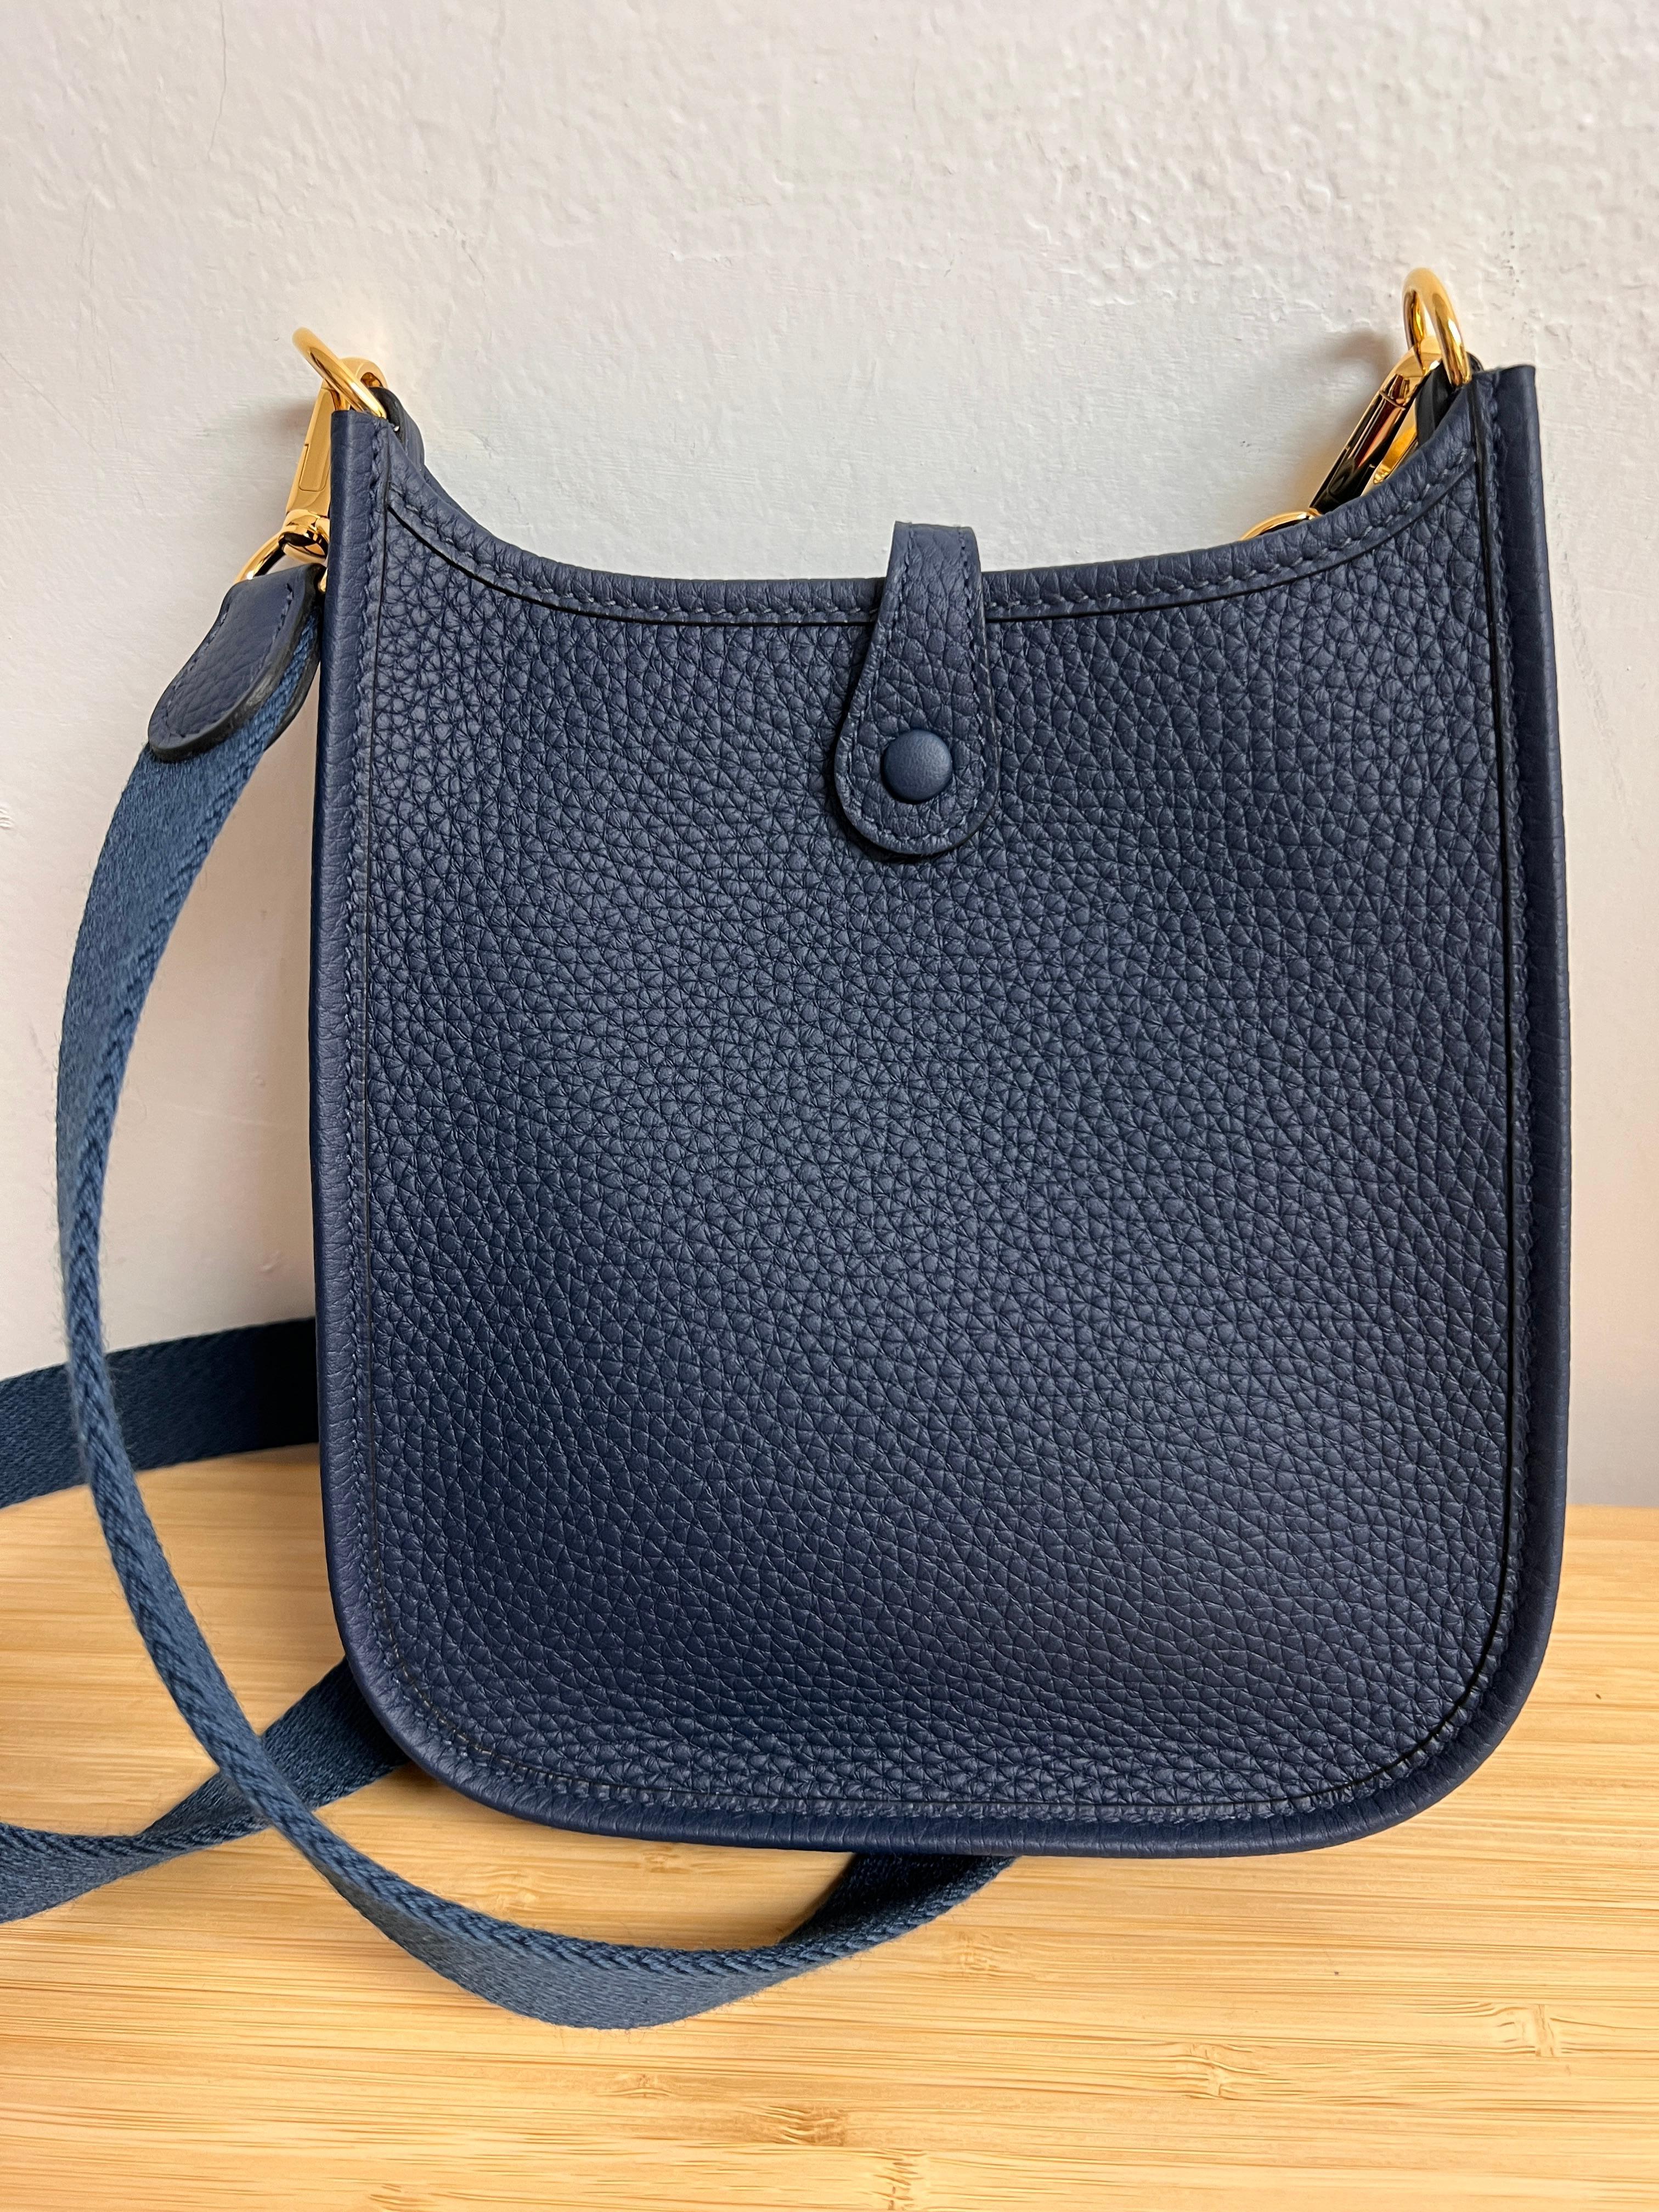 Hermès mini Evelyne TPM en cuir bleu de Prusse Clémence et métal doré.

Nouveau jamais utilisé, set complet avec boîte, dustbag et ruban.